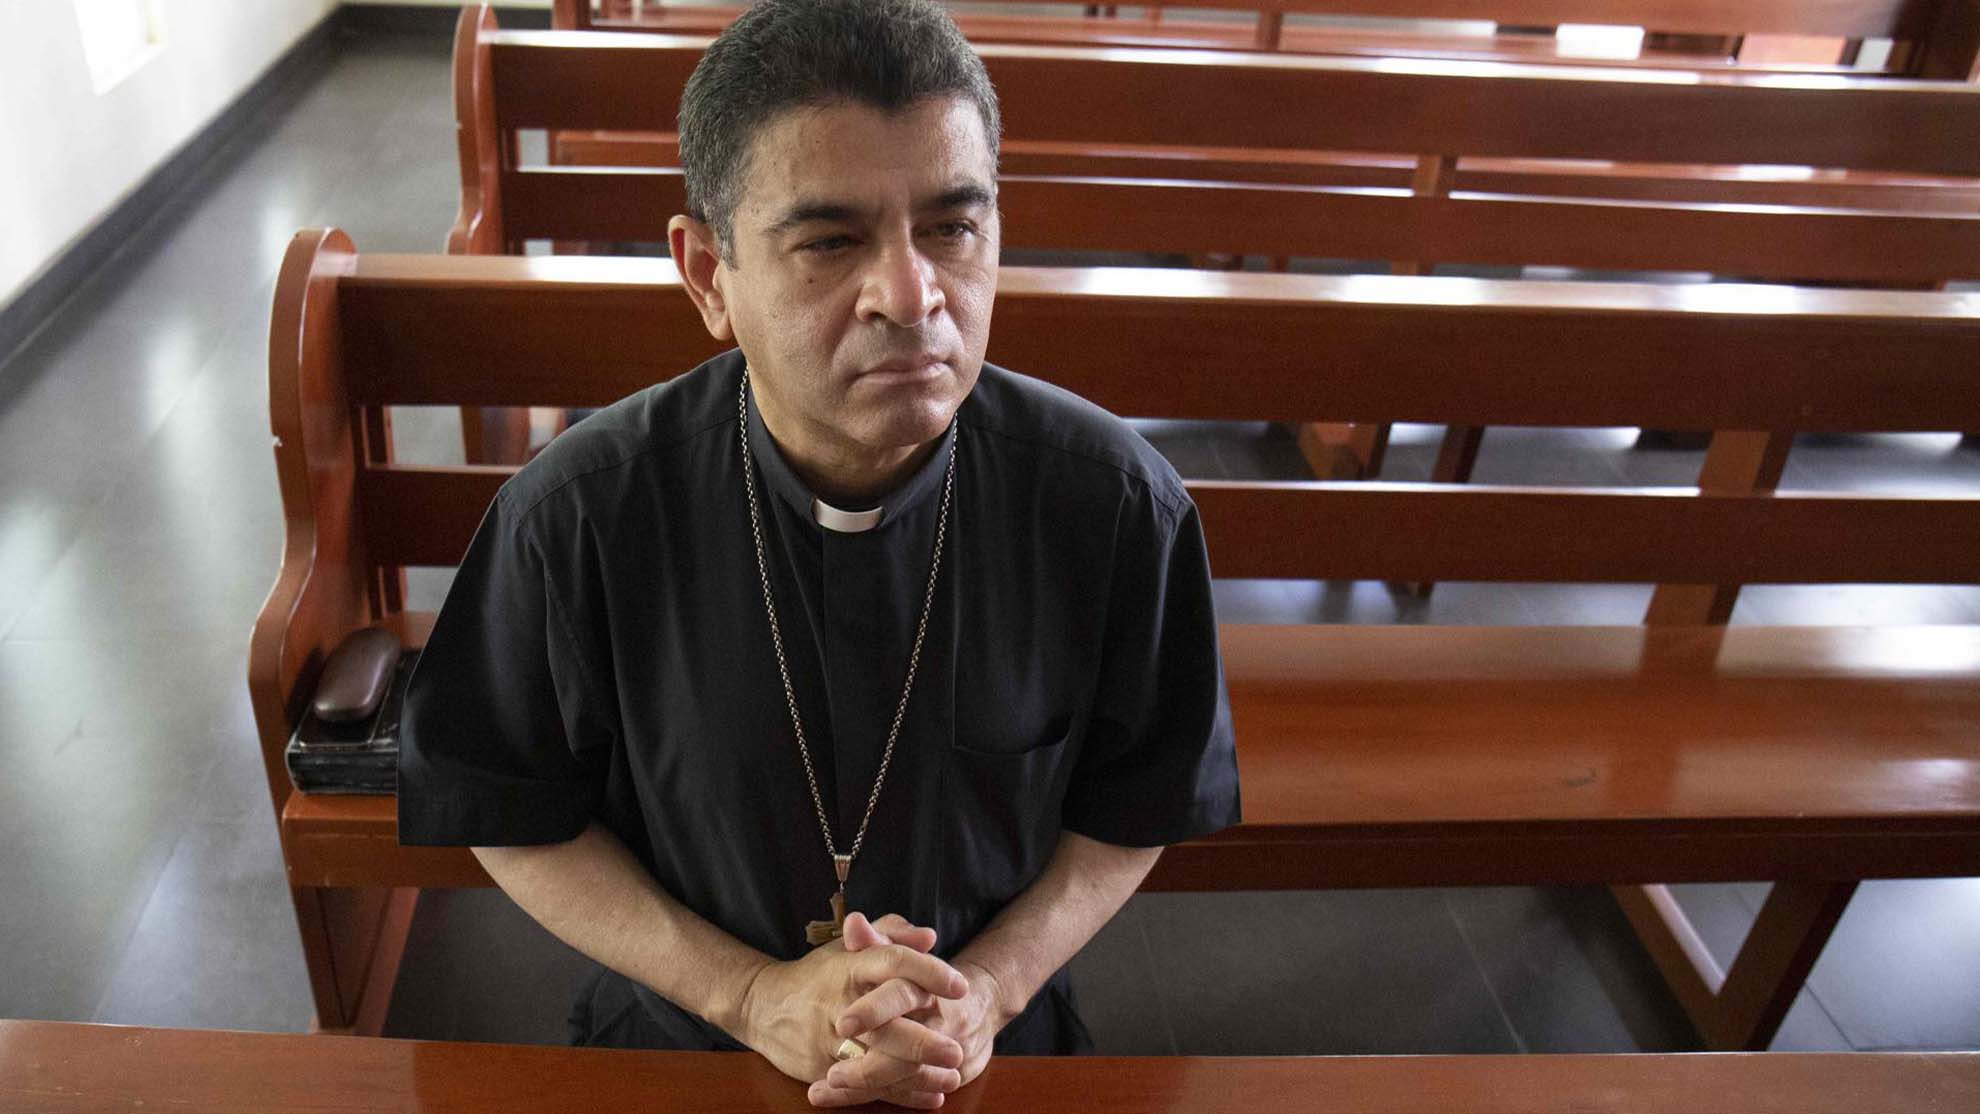 Acusan de conspiración a obispo reconocido por críticas al gobierno de Nicaragua